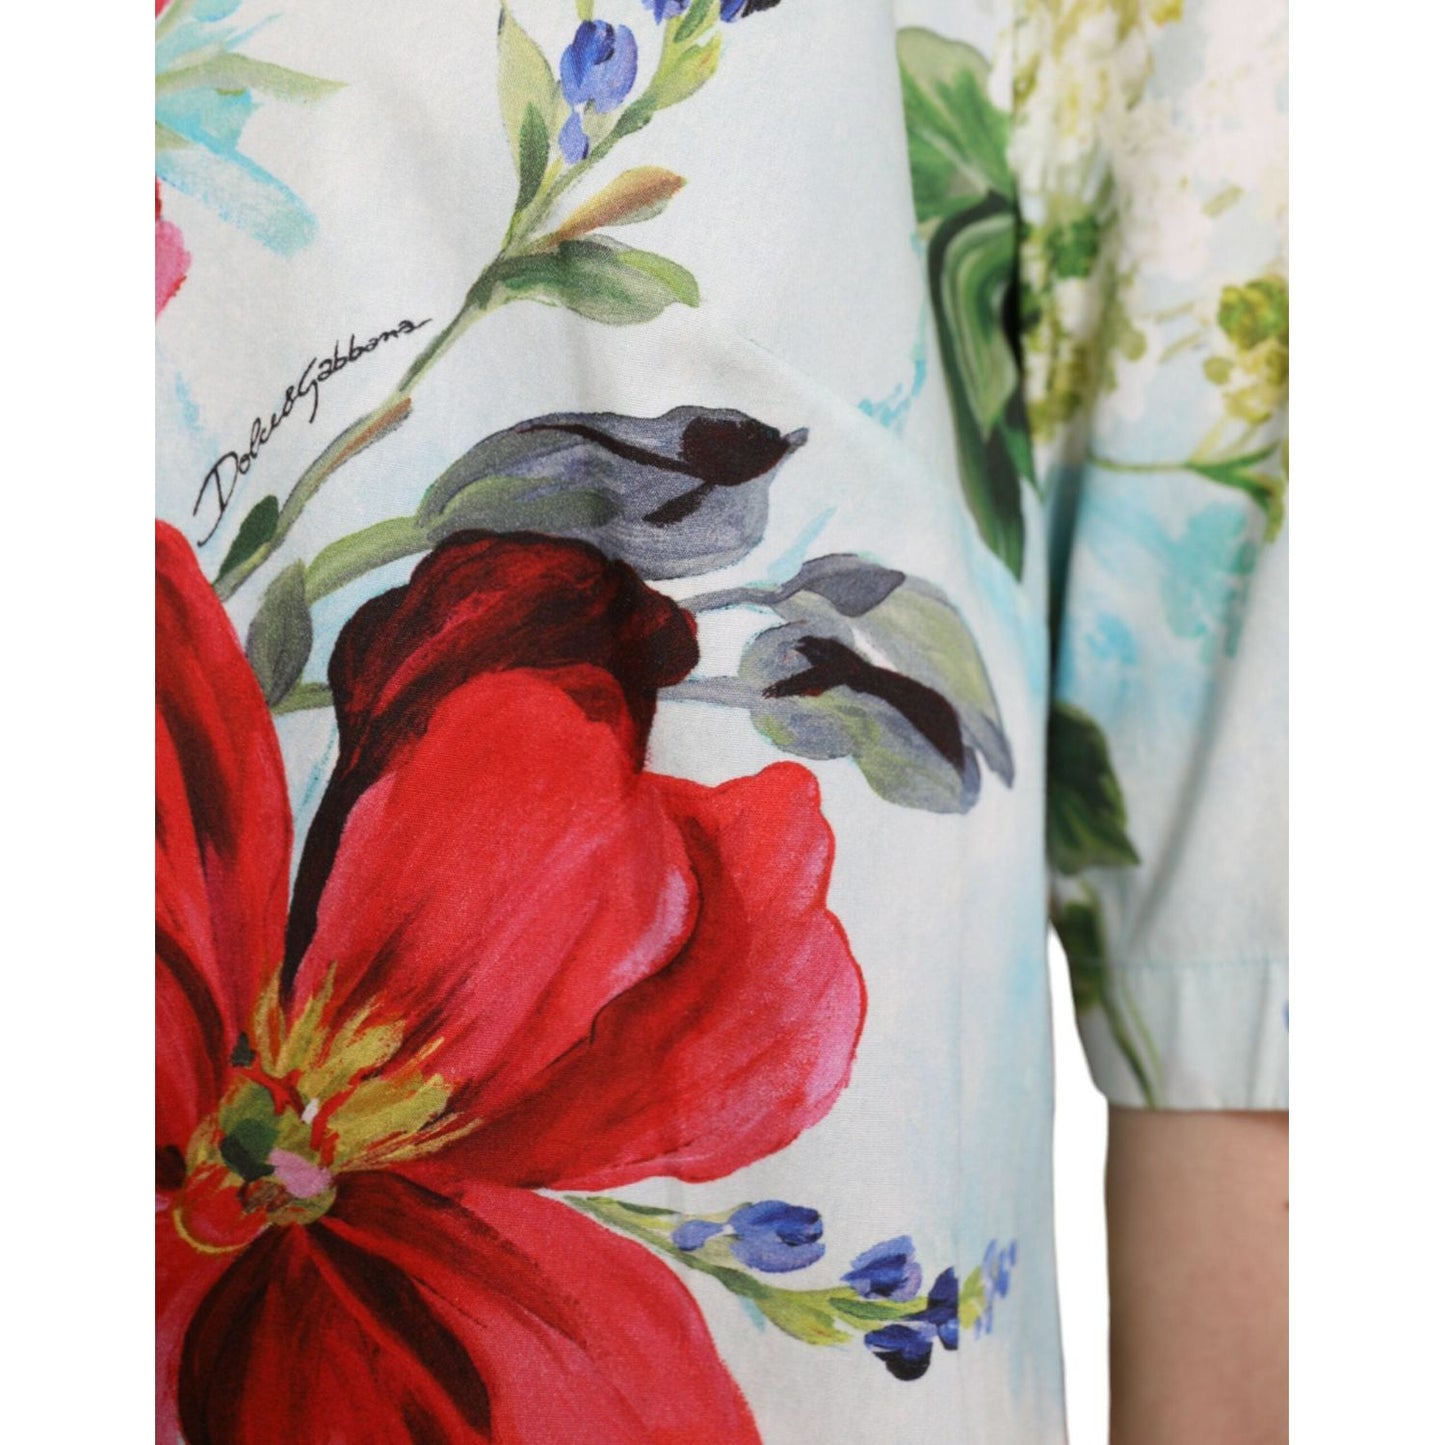 Dolce & Gabbana Chic Floral Round Neck Cotton Top multicolor-floral-cotton-round-neck-blouse-top